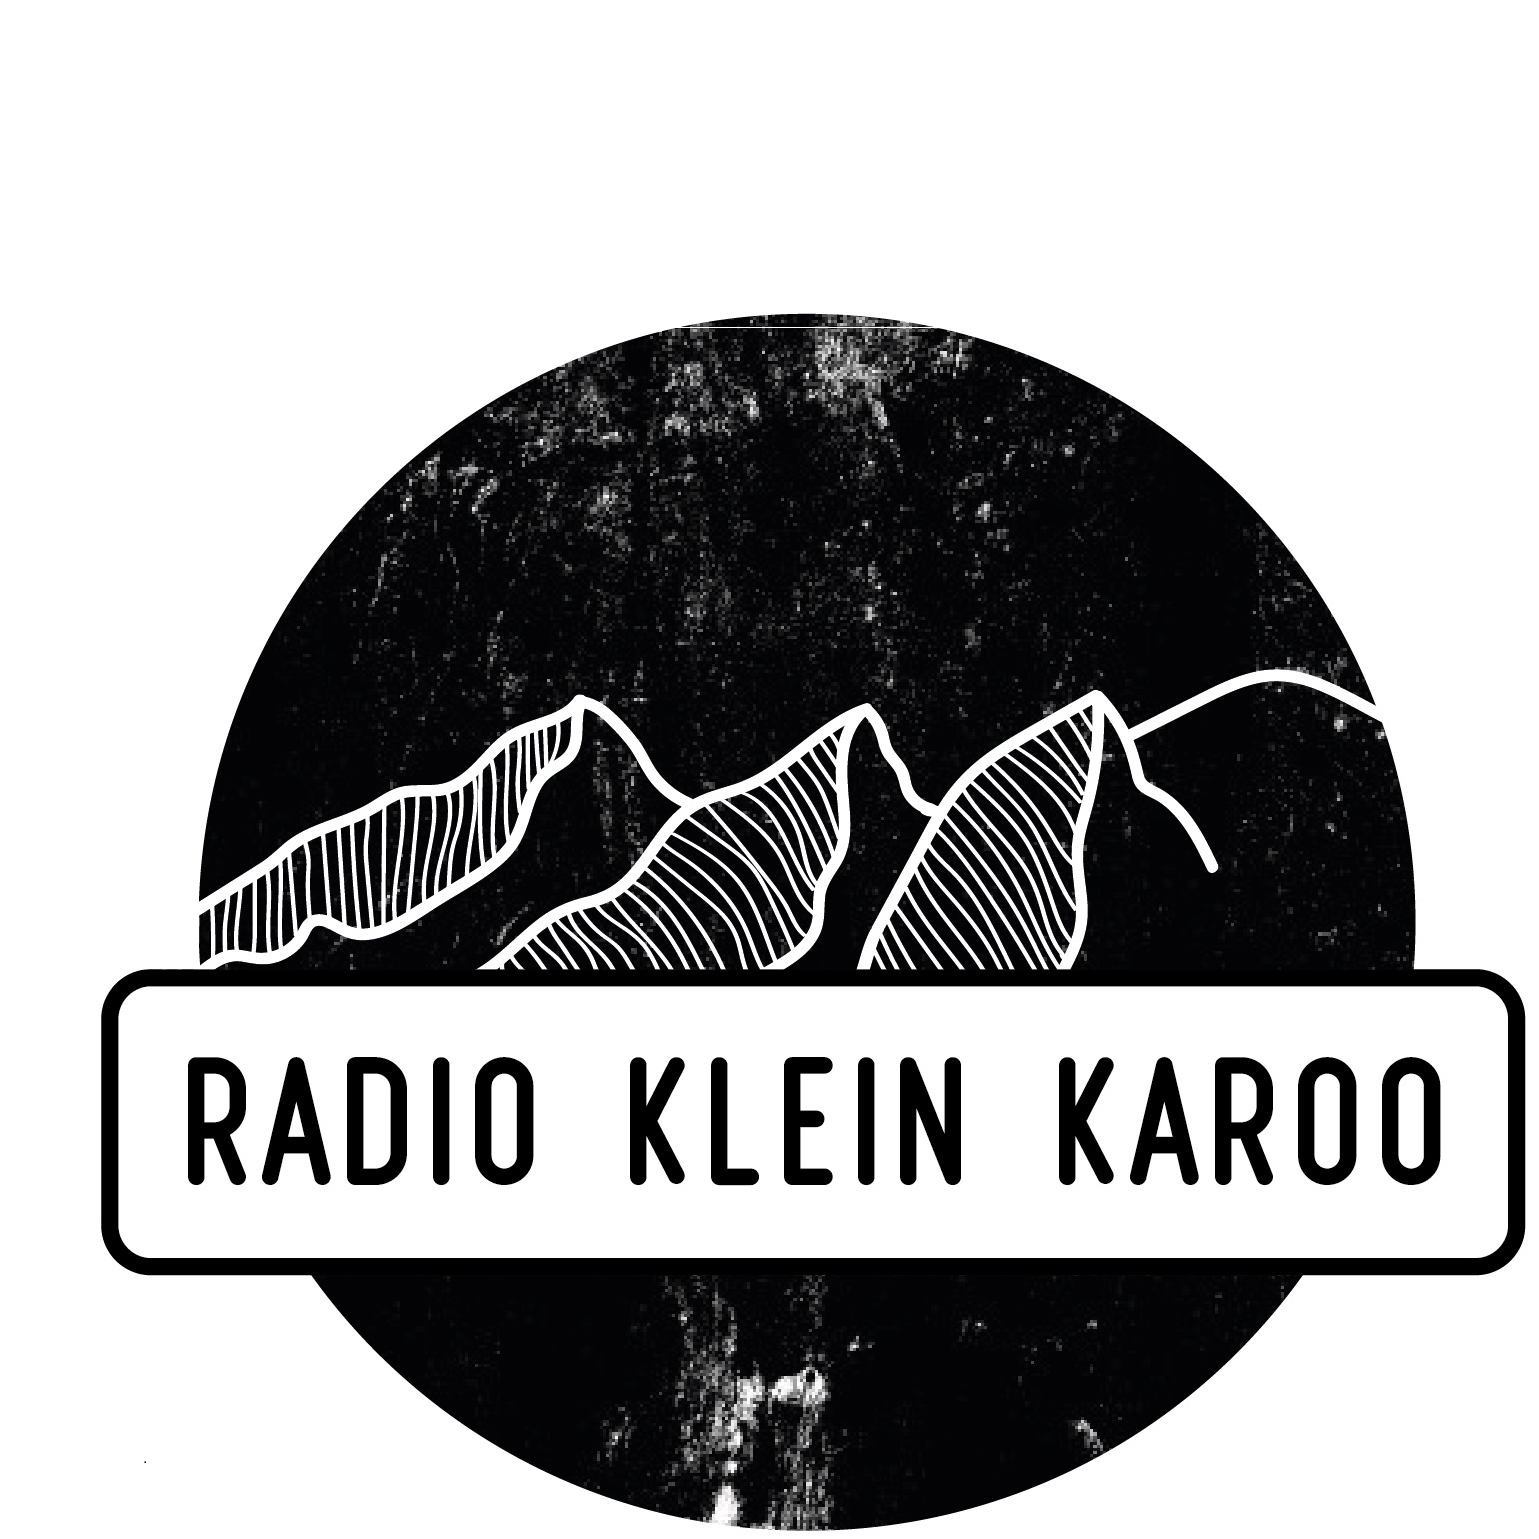 RADIO KLEIN KAROO